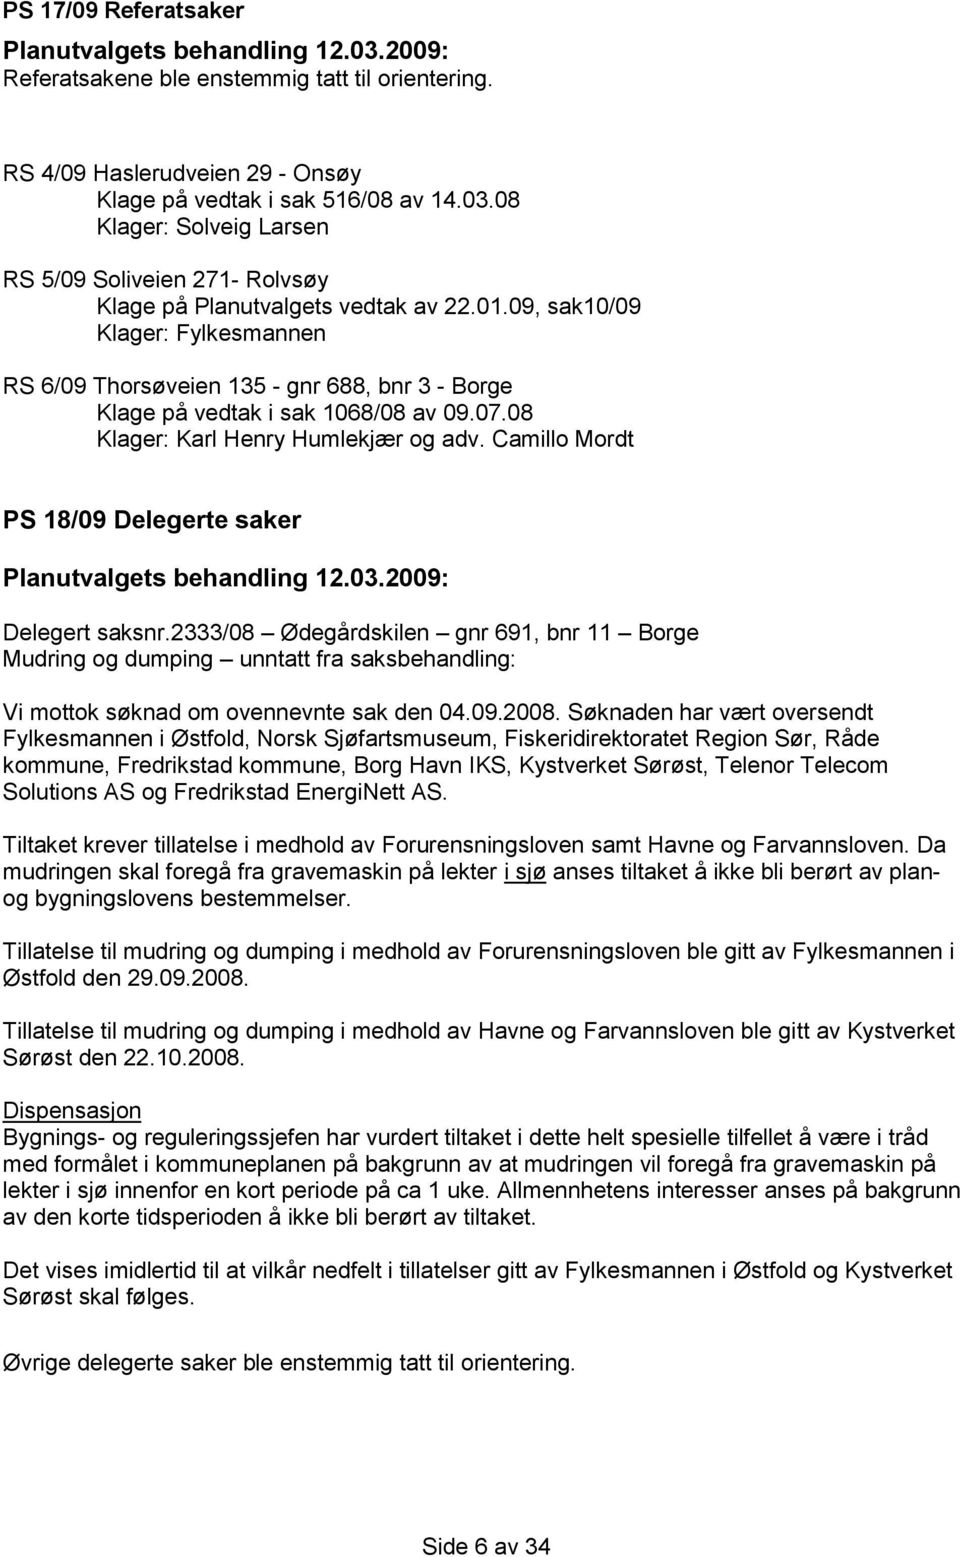 09, sak10/09 Klager: Fylkesmannen RS 6/09 Thorsøveien 135 - gnr 688, bnr 3 - Borge Klage på vedtak i sak 1068/08 av 09.07.08 Klager: Karl Henry Humlekjær og adv.